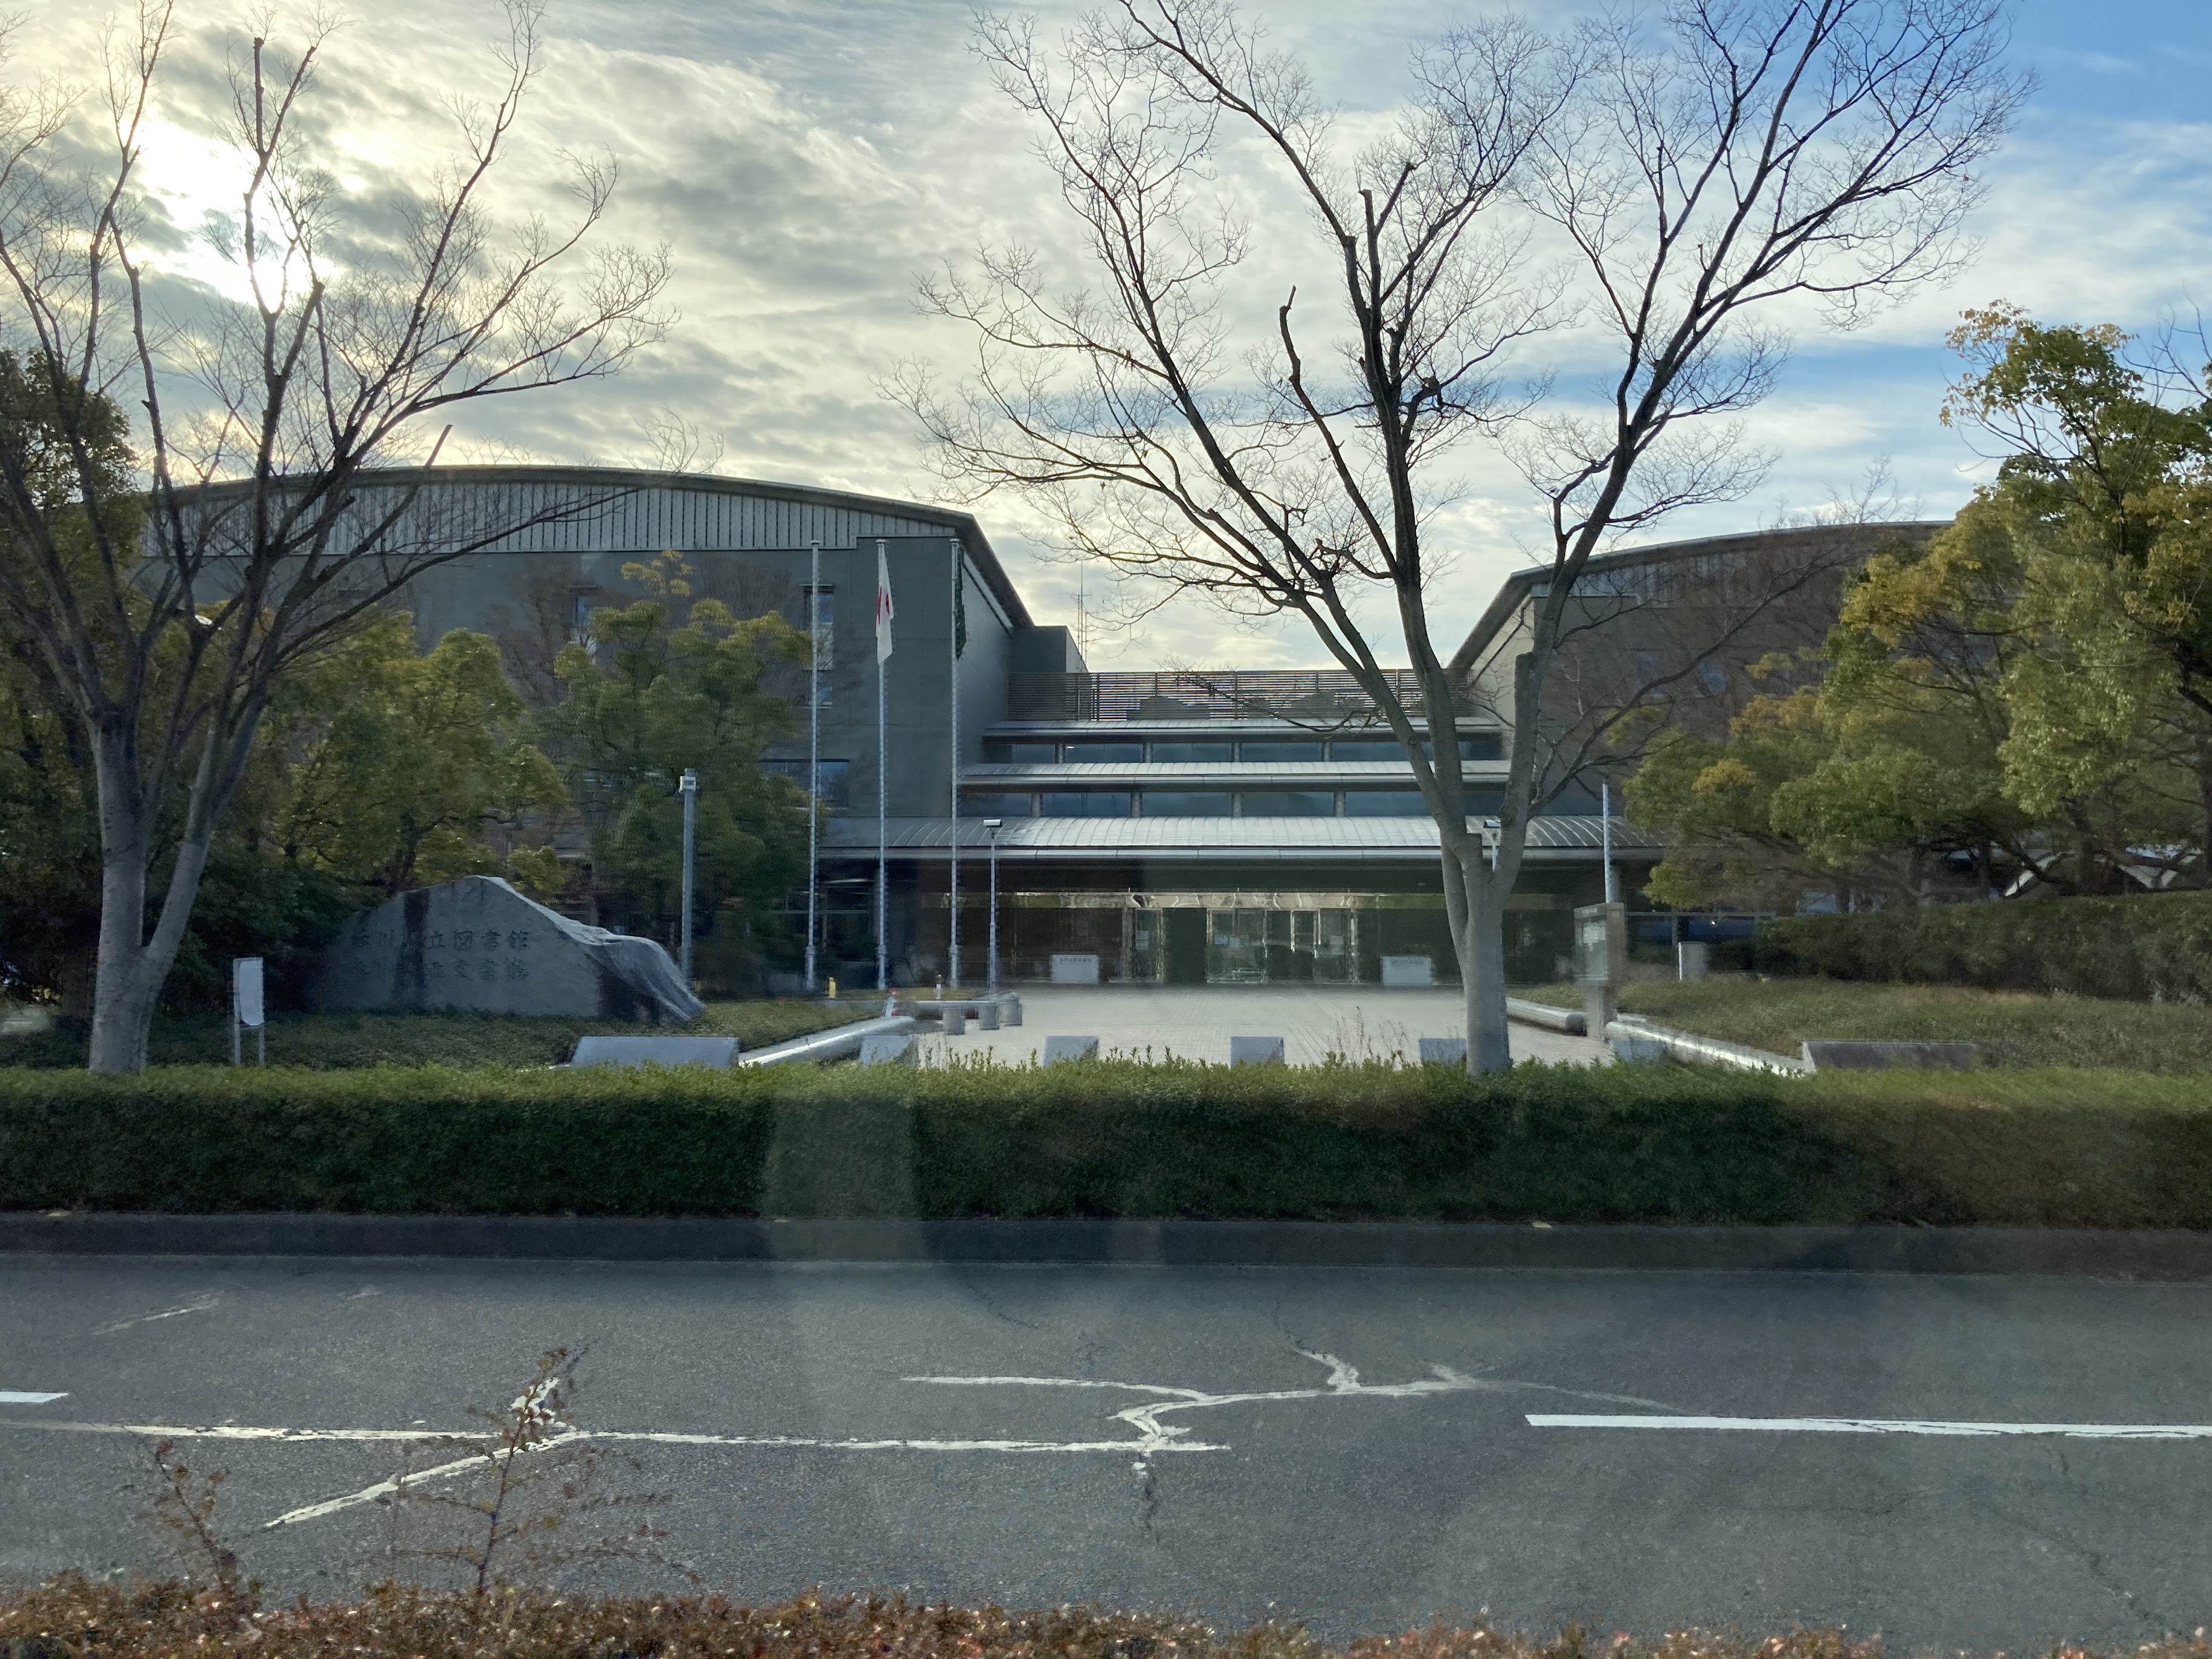 香川県立図書館